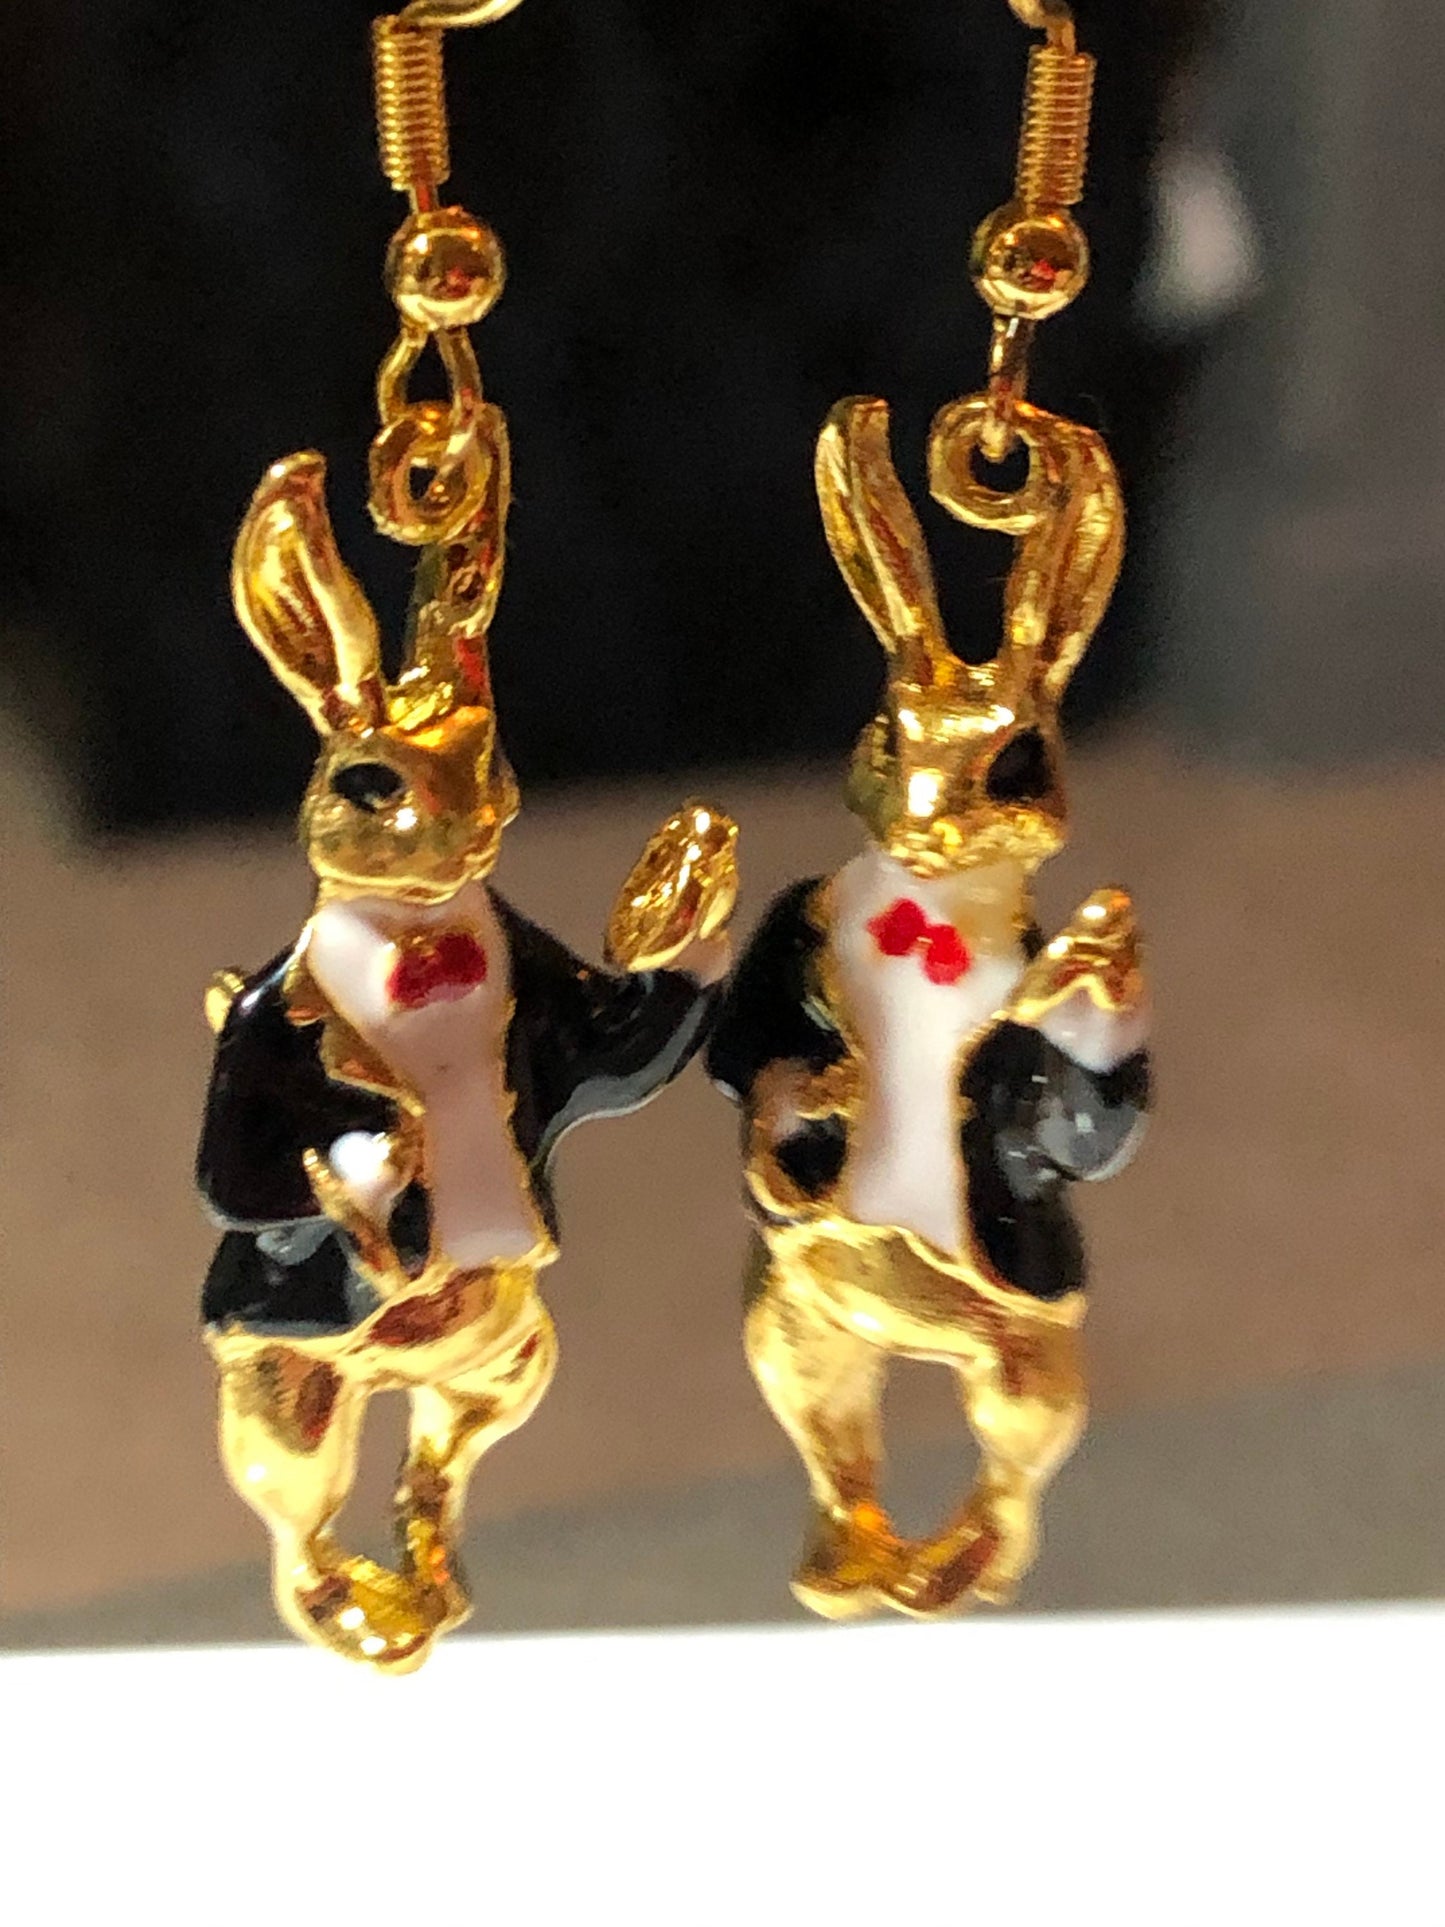 gold tone black white enamel Alice in wonderland inspired rabbit earrings for pierced ears